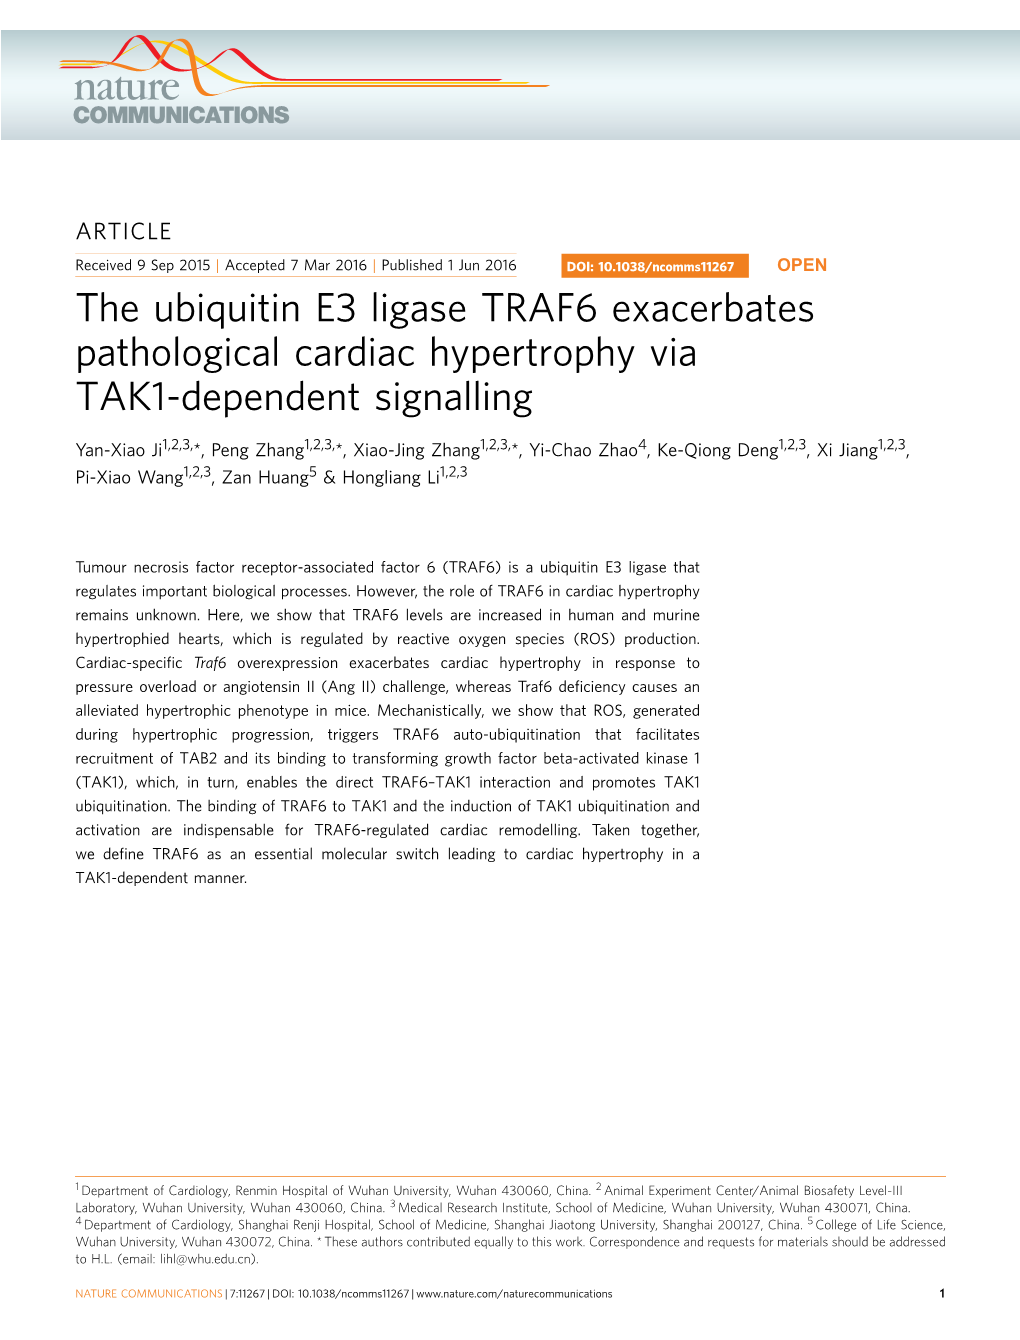 The Ubiquitin E3 Ligase TRAF6 Exacerbates Pathological Cardiac Hypertrophy Via TAK1-Dependent Signalling